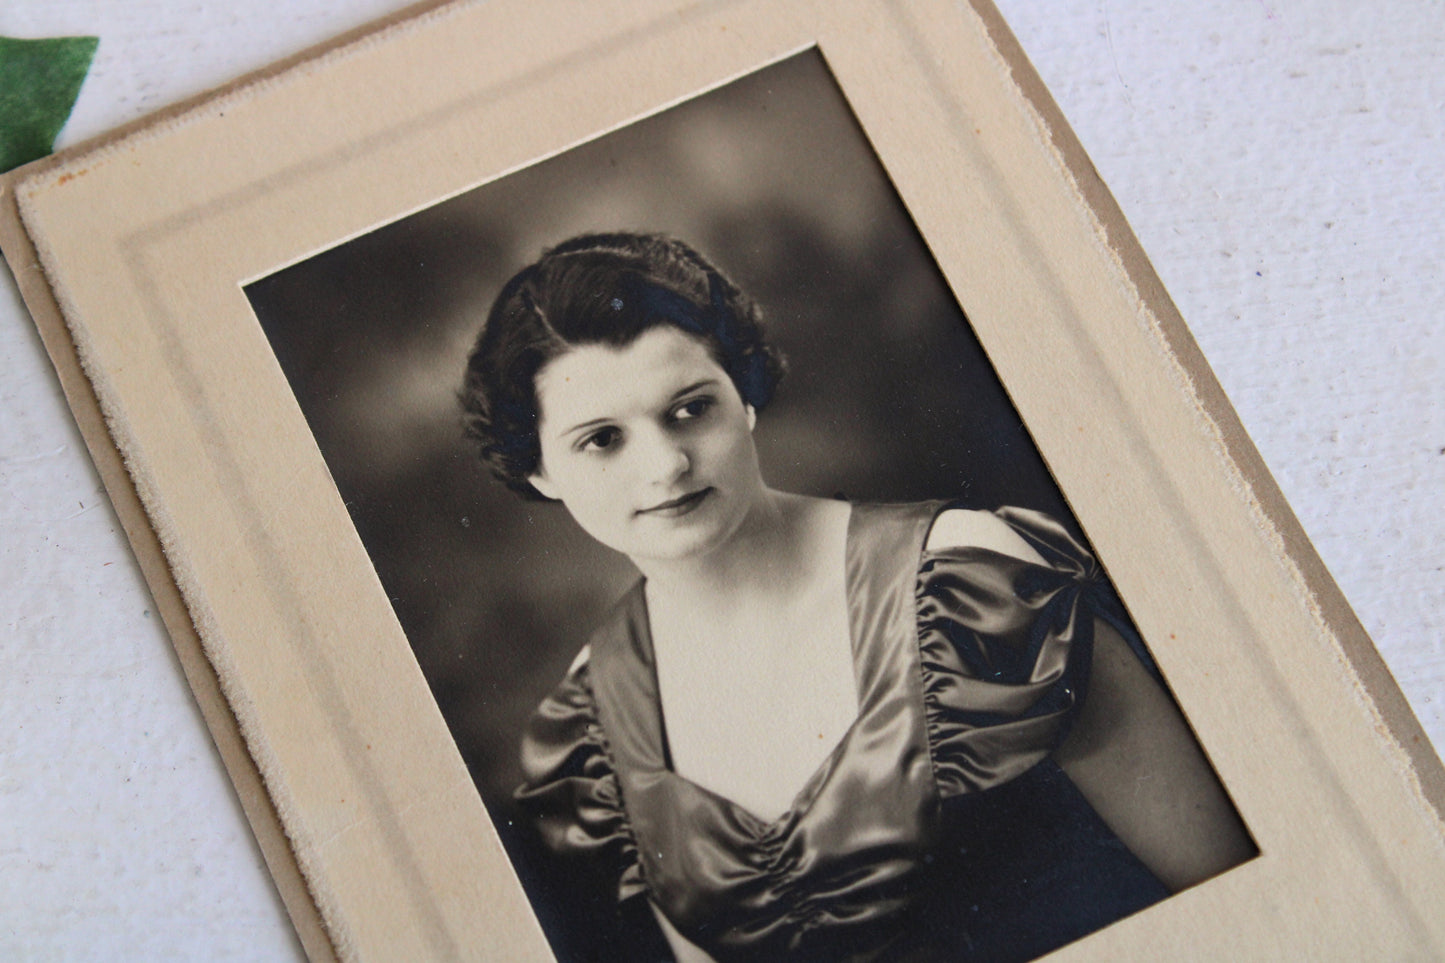 Vintage 1930s Sepia Photograph of a Woman's Portrait